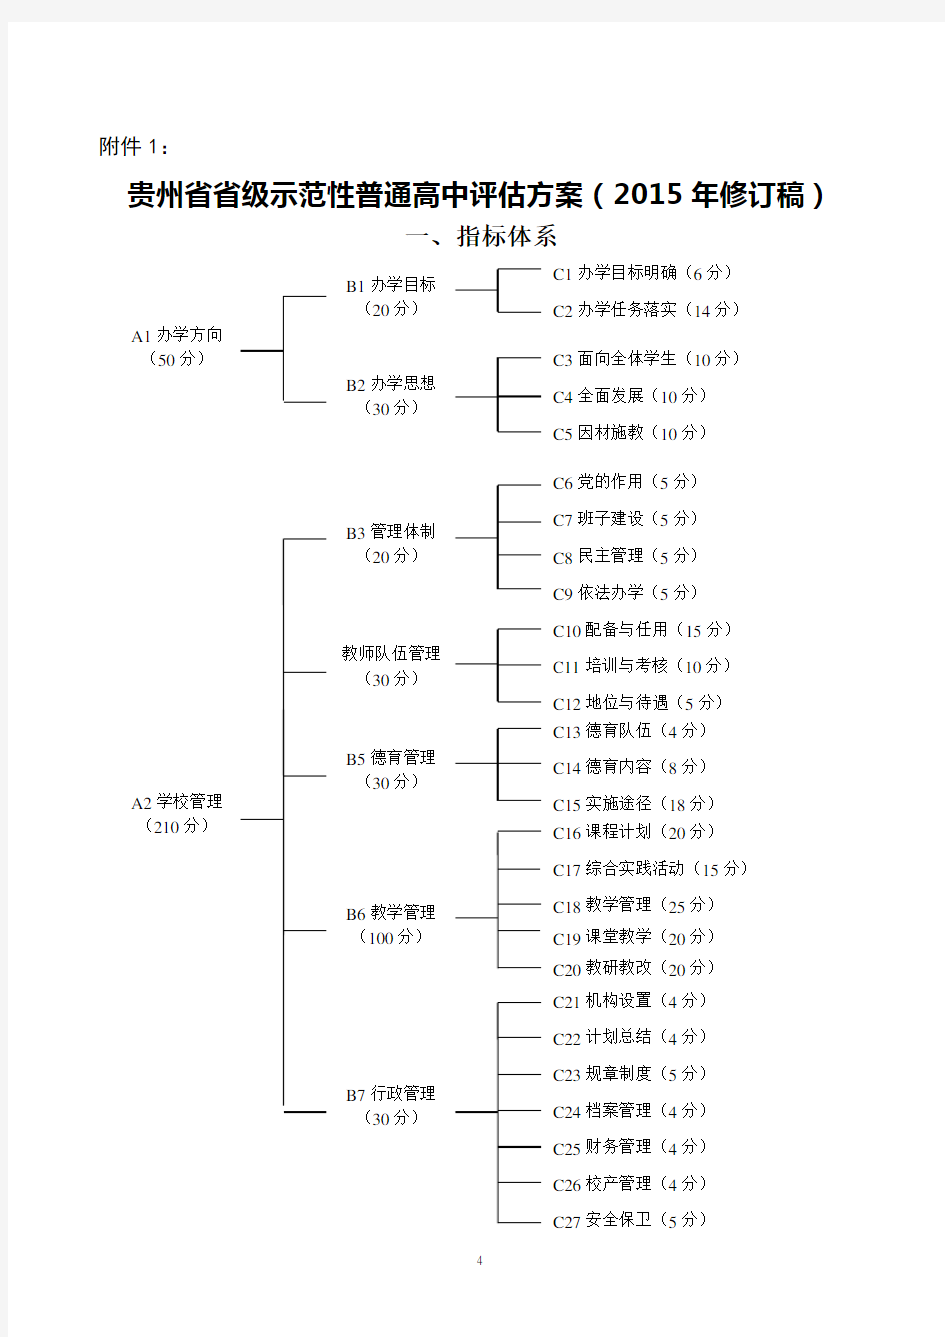 贵州省省级示范性普通高中评估方案(2015年修订稿)